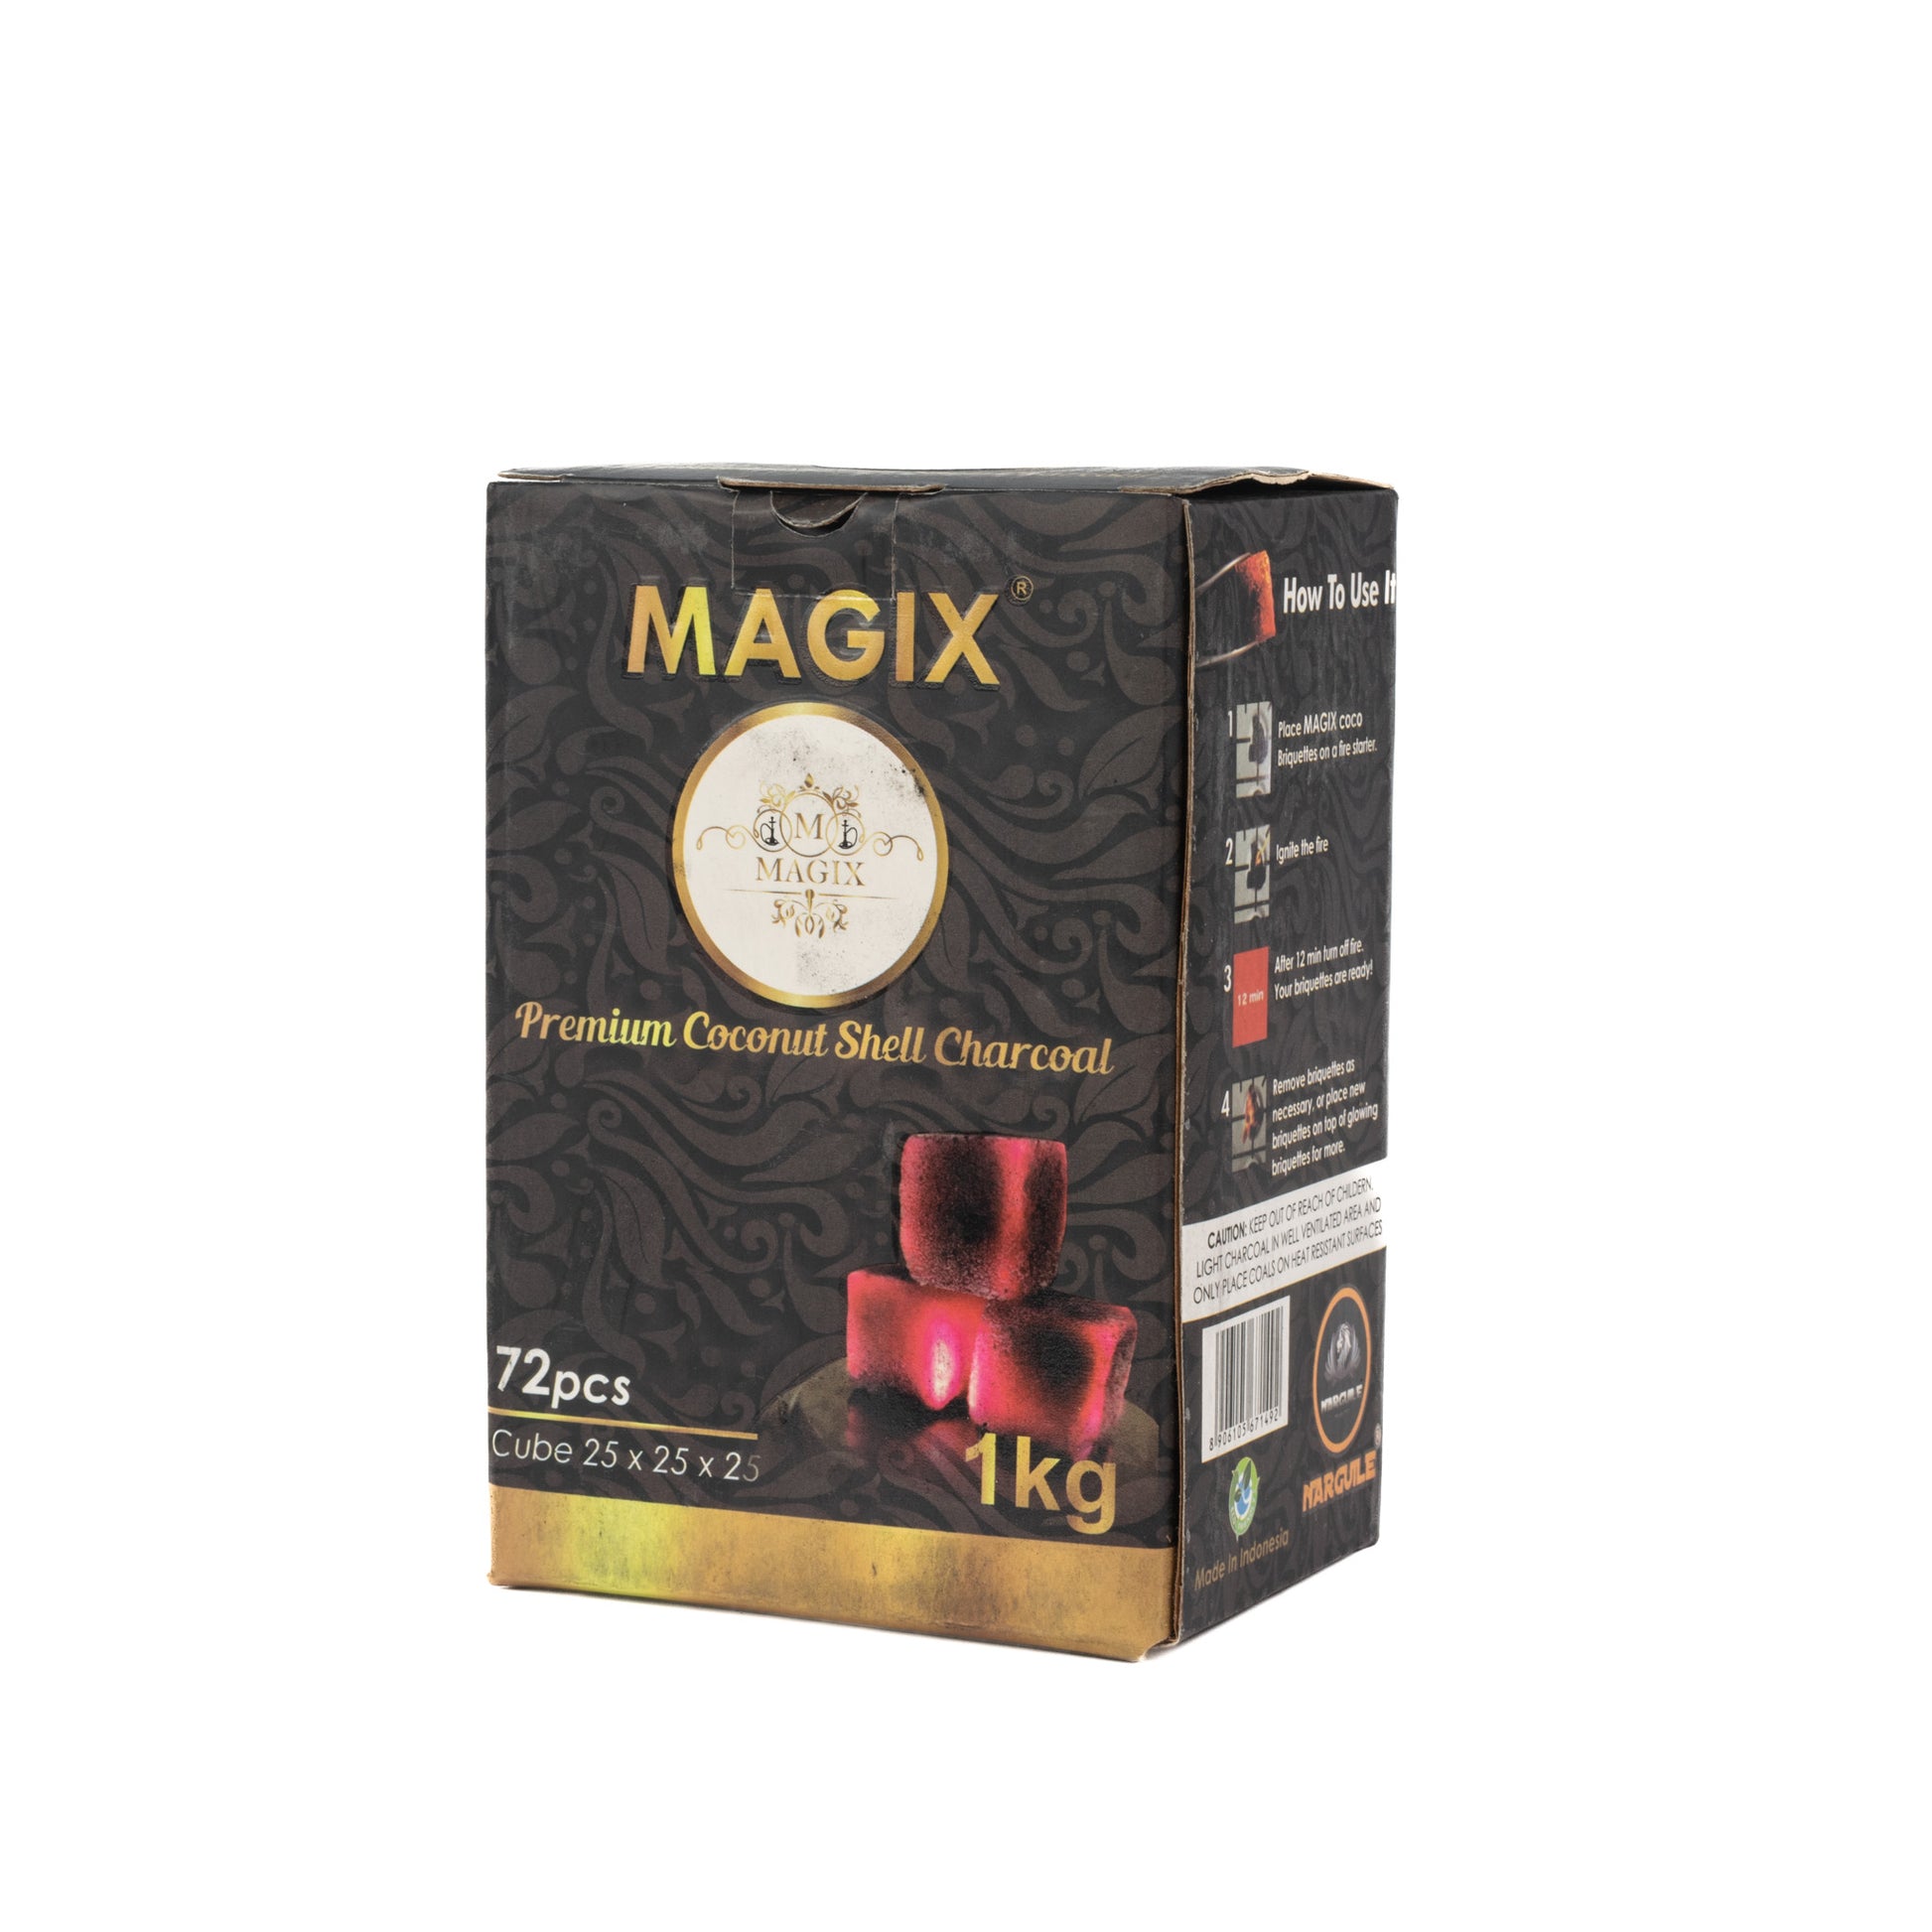 Magix Coconut Coal for Hookah 1kg Pack - 72pcs